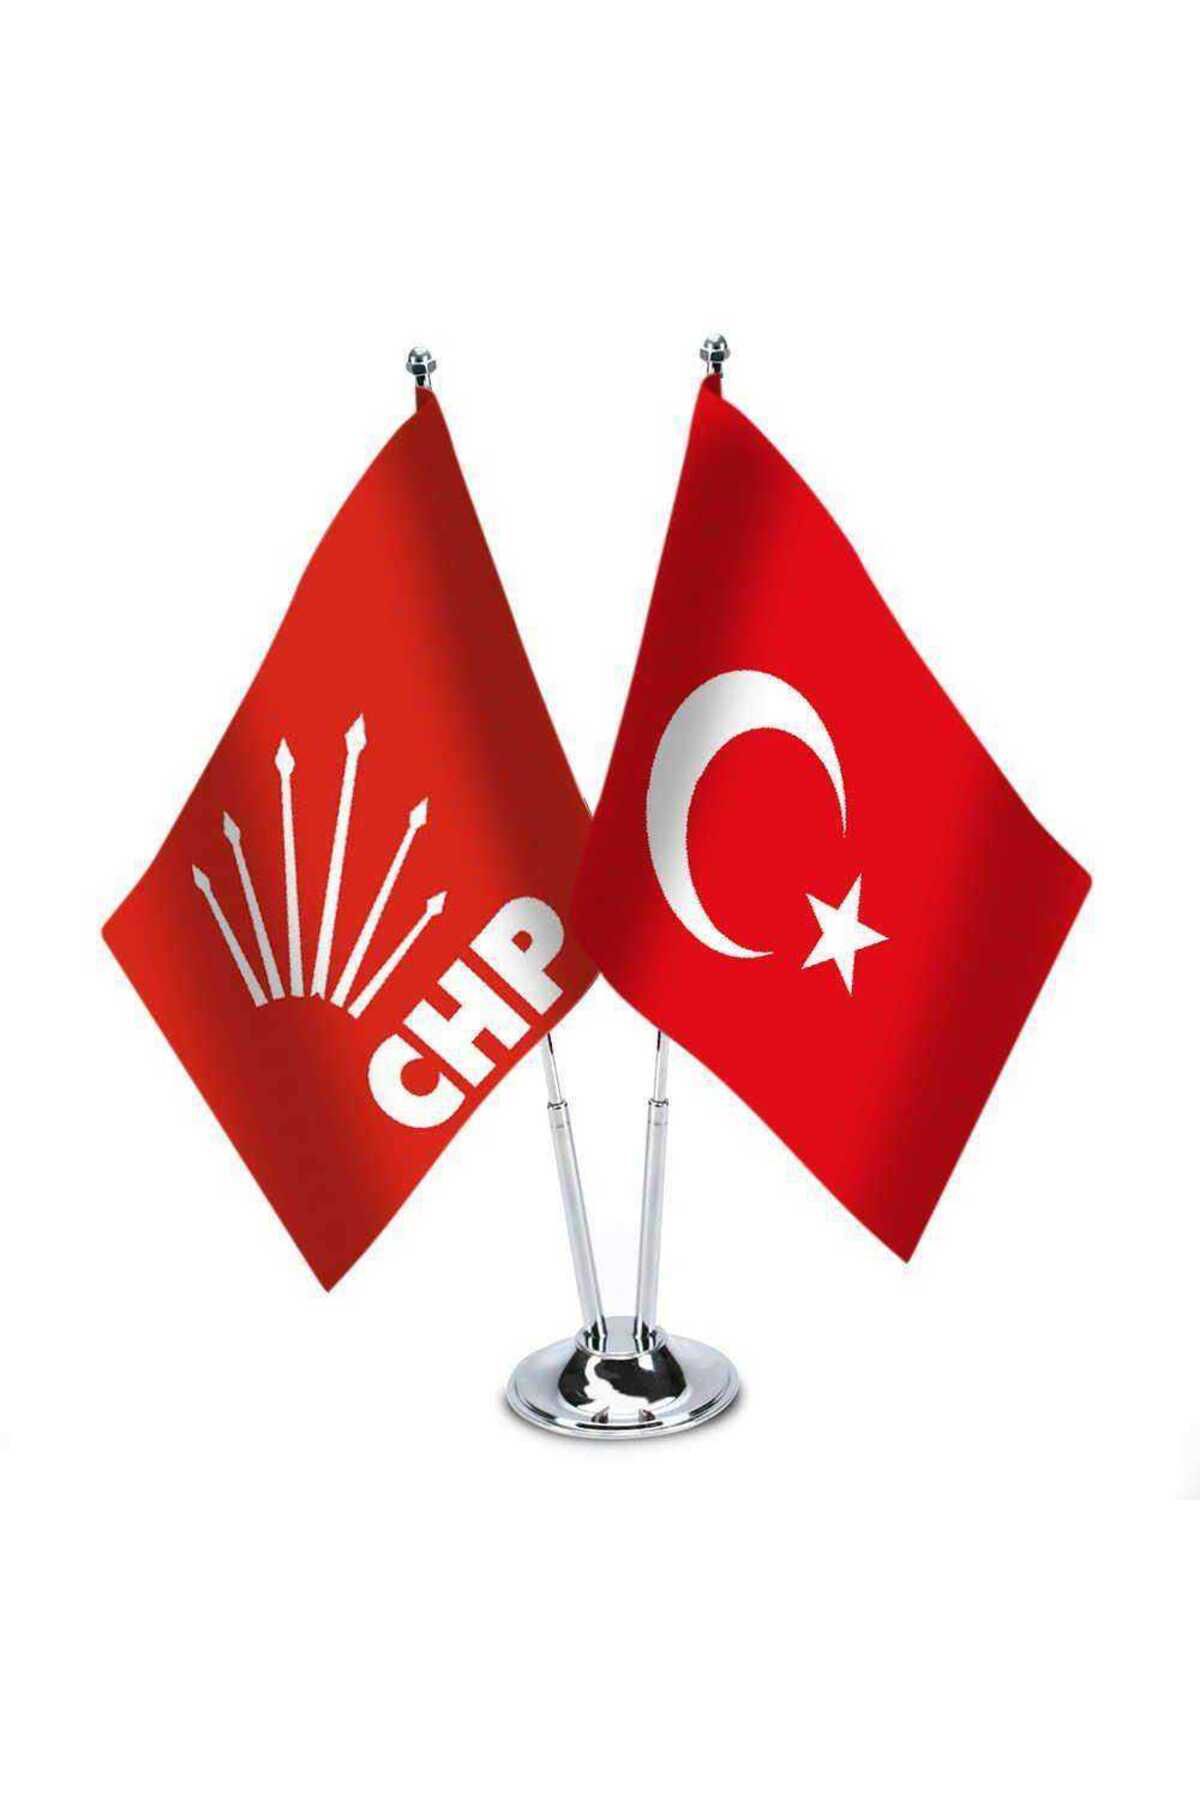 Genel Markalar Kırmızı Chp Ve Türkiye - Ikili Saten Masa Bayrağı Set